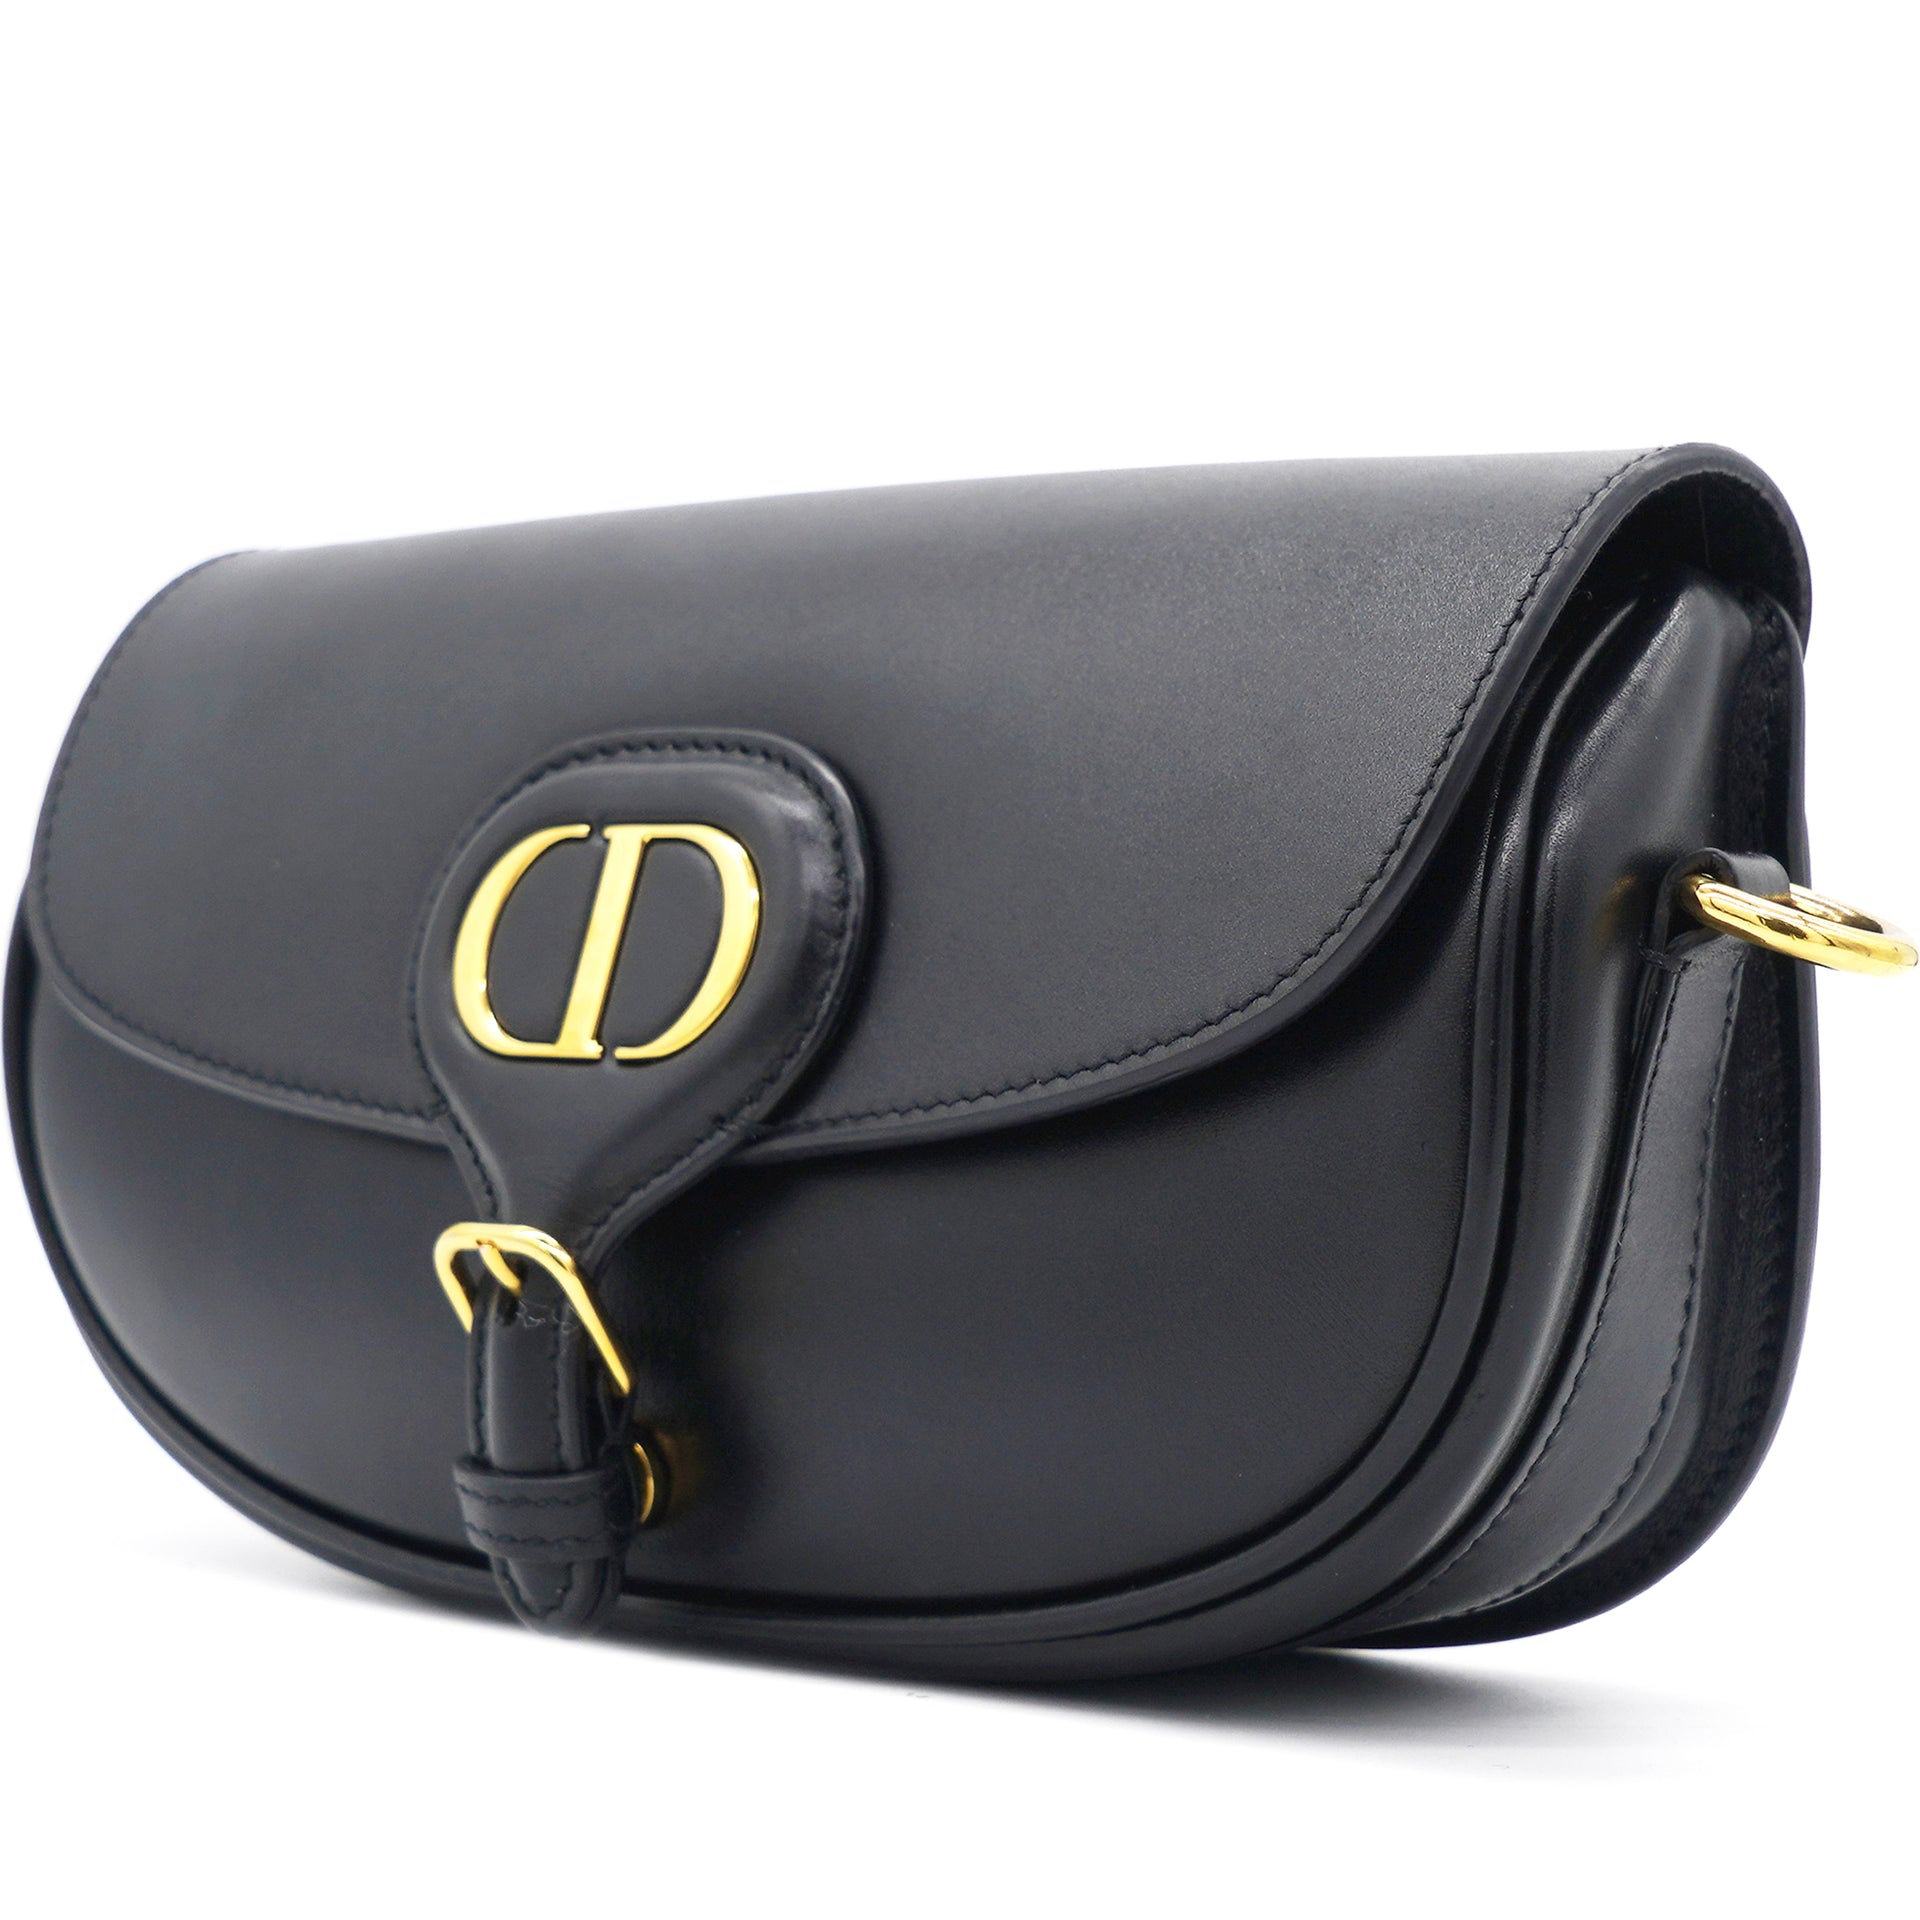 For @Dior & their new Dior Bobby Bag #DiorAustralia #diorbobby